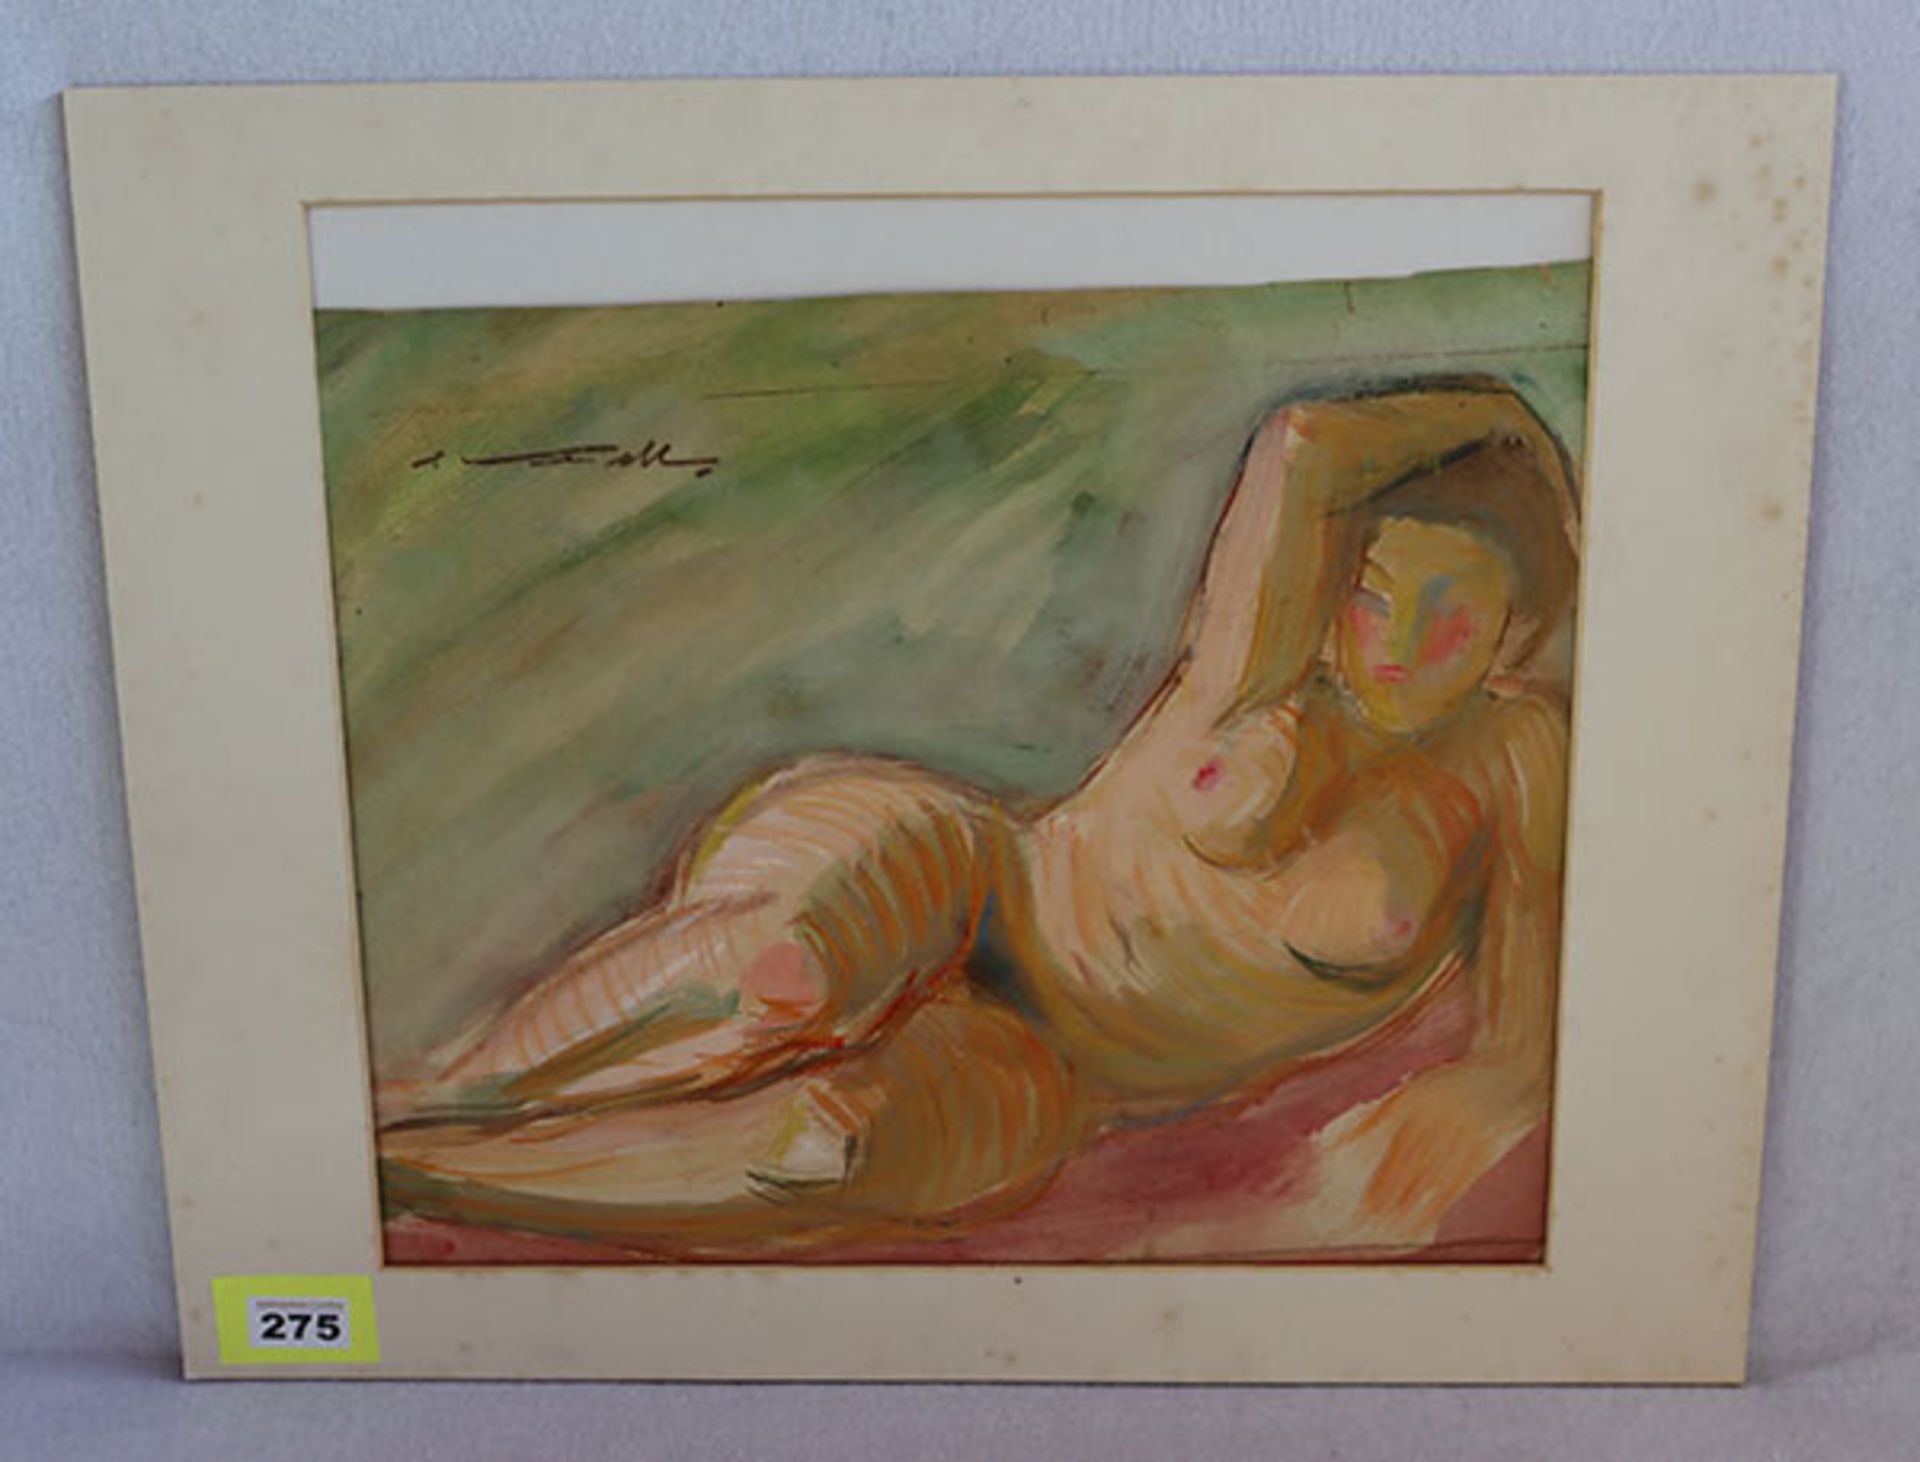 Aquarell 'Liegender Frauenakt', undeutlich sichniert, in Passepartout, 47 cm x 58 cm